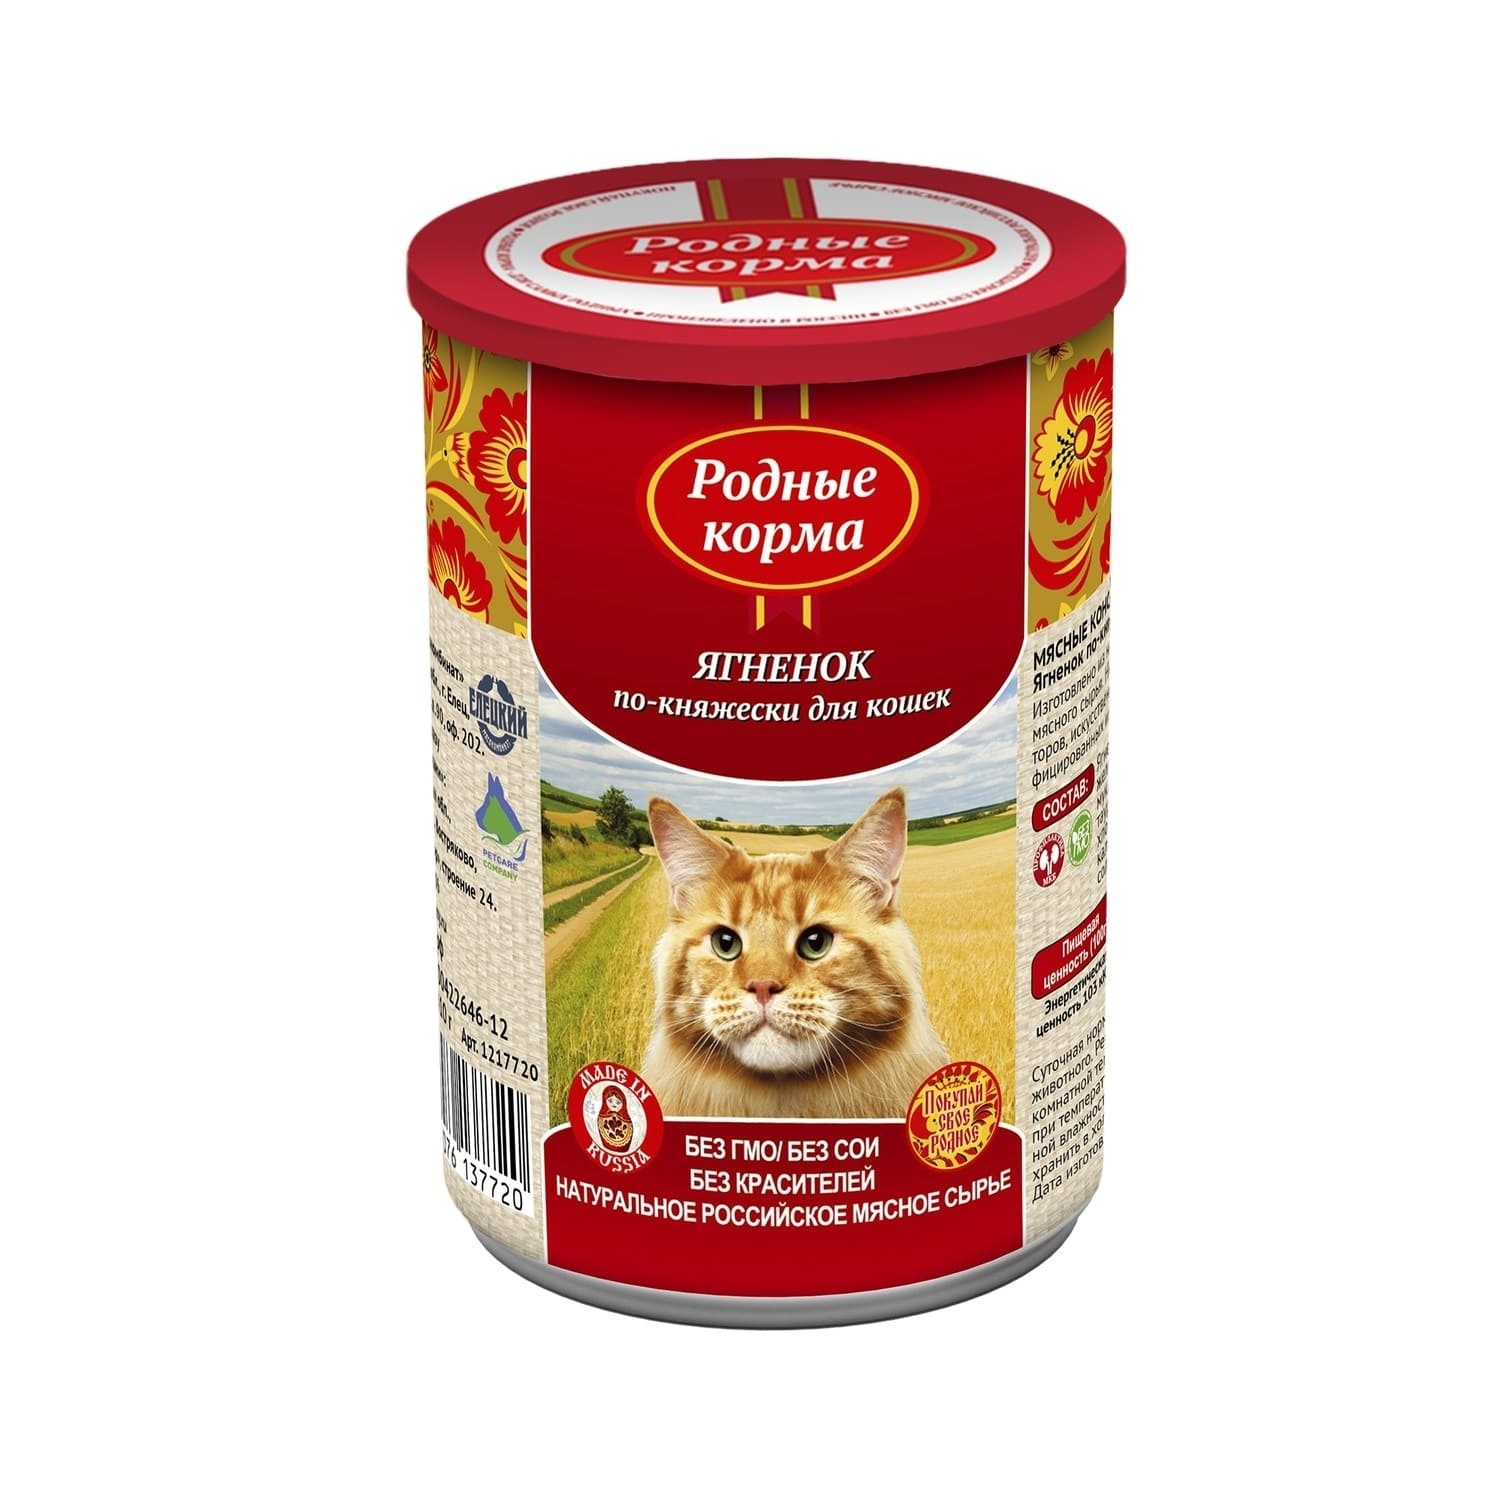 Родные корма Родные корма консервы для кошек, ягненок по-княжески (410 г) фотографии